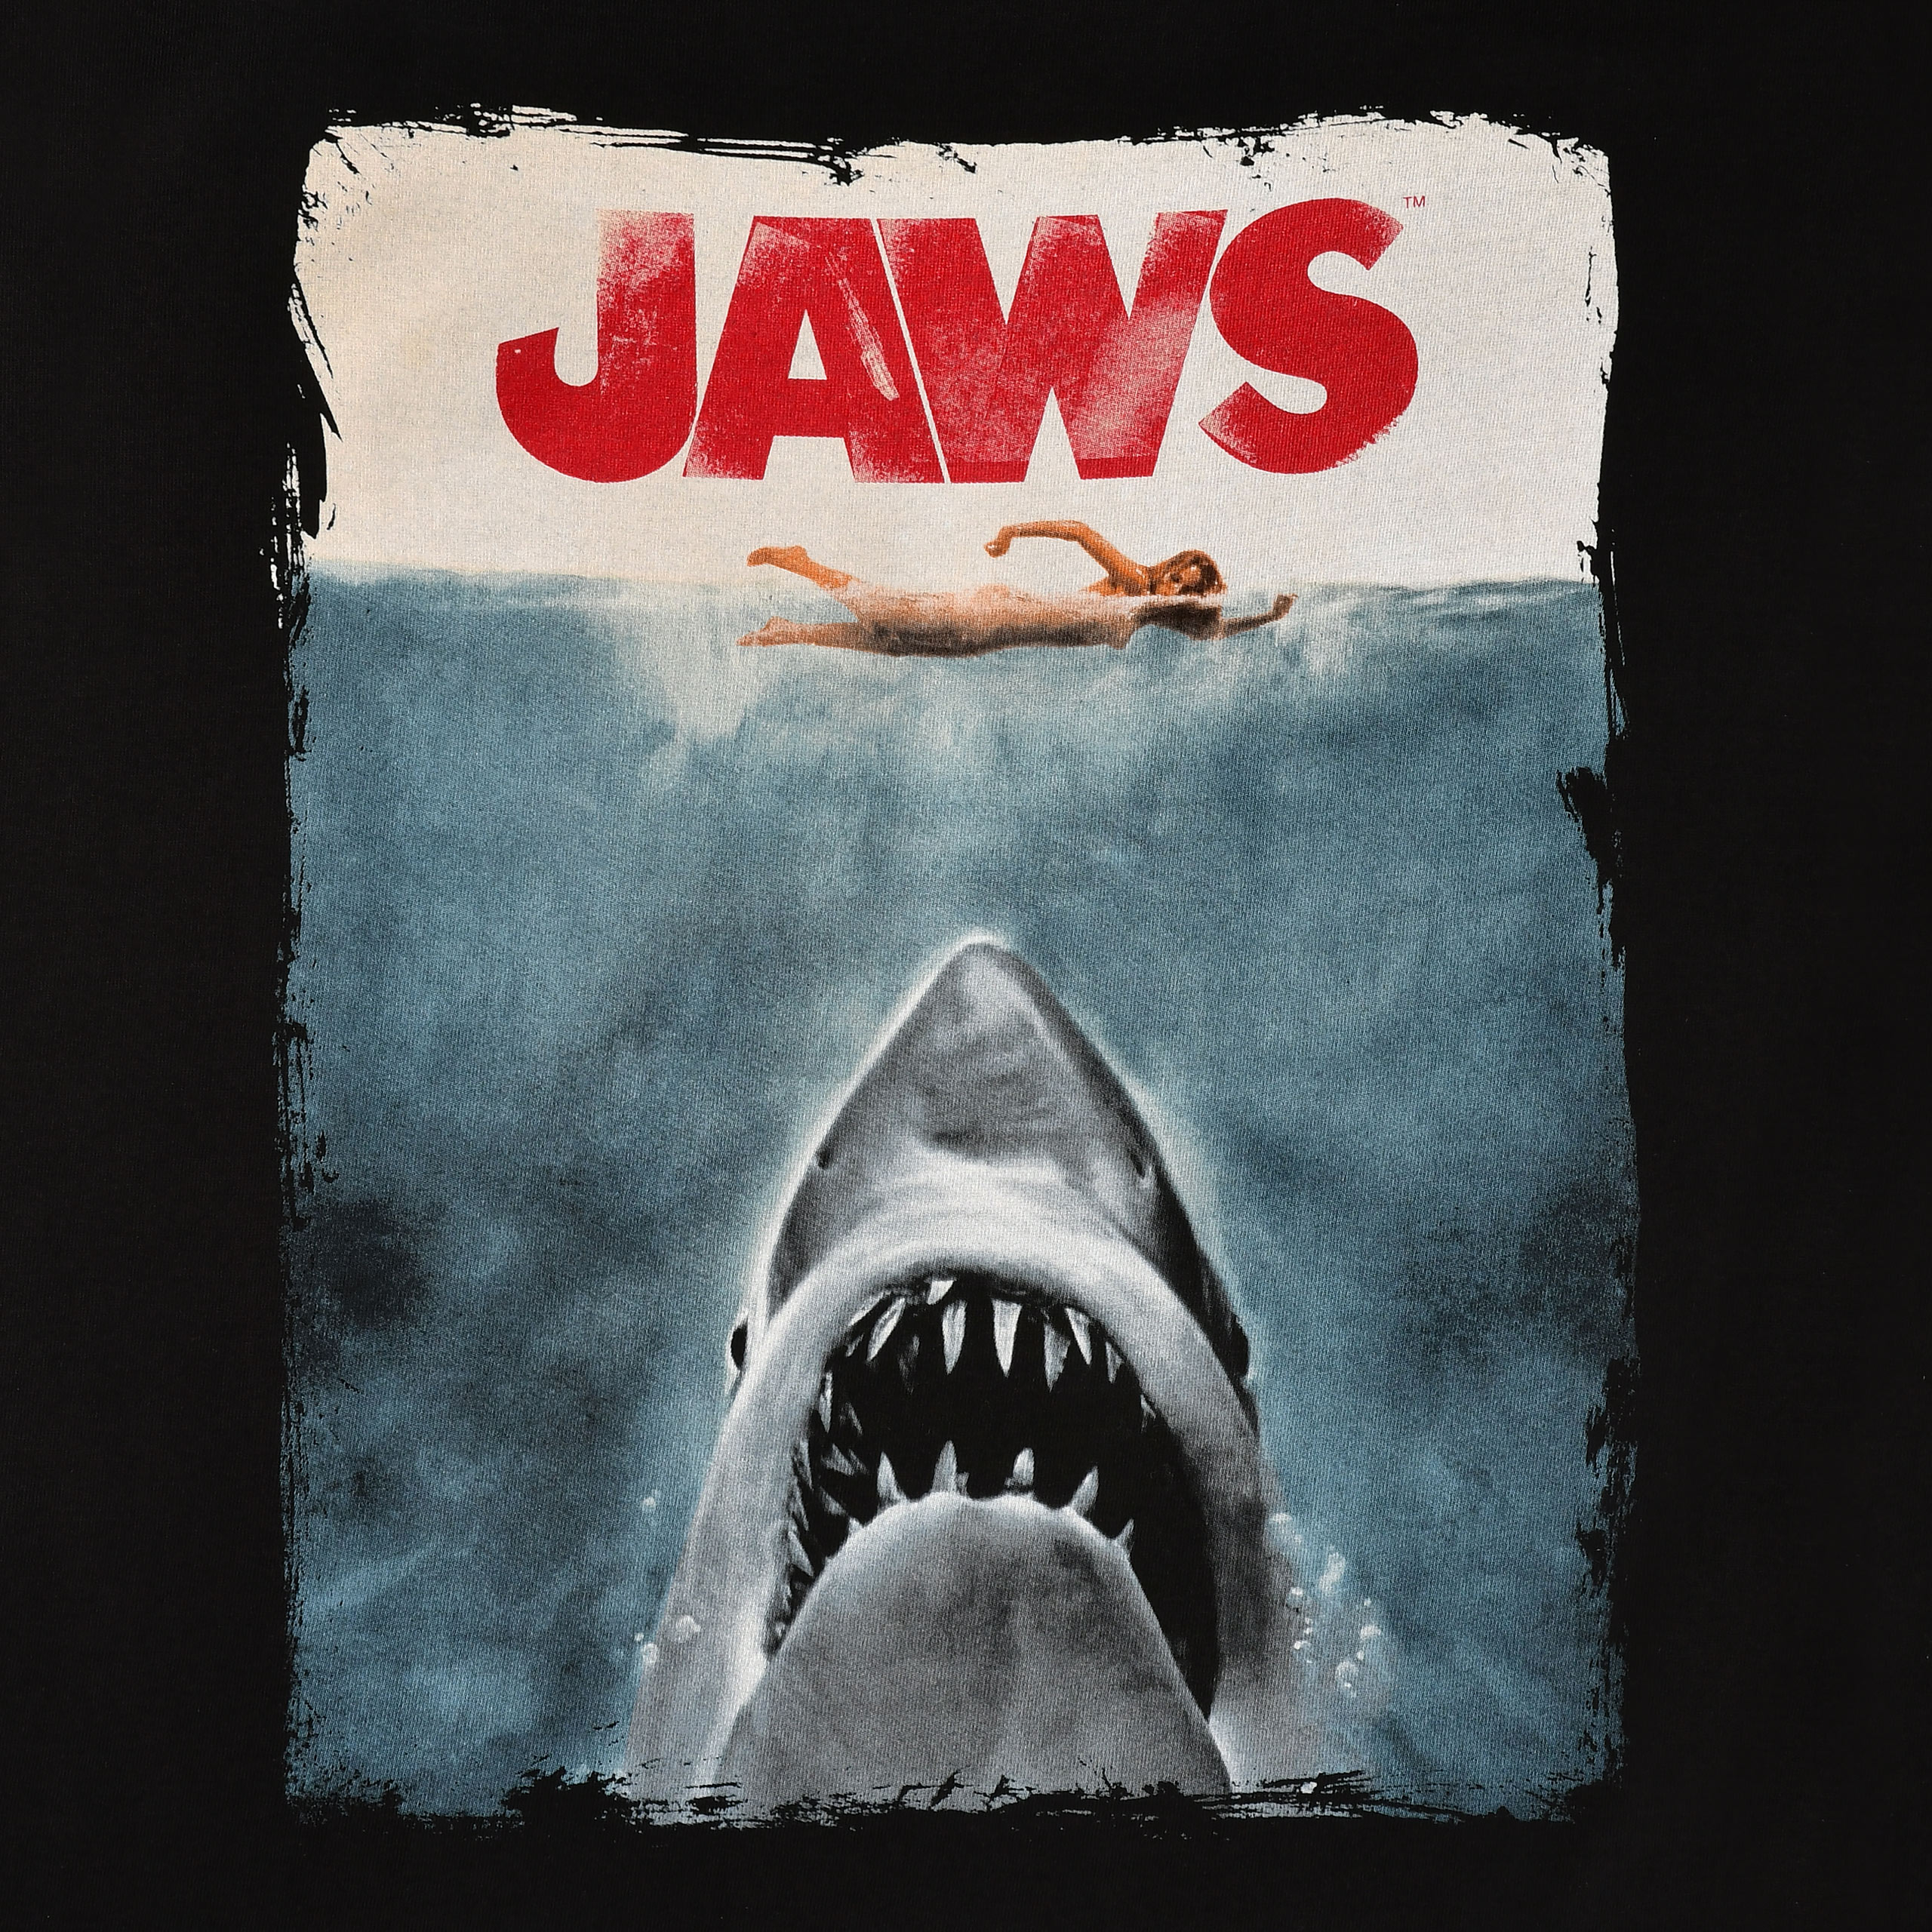 De Witte Haai - Jaws Poster Shirt Zwart